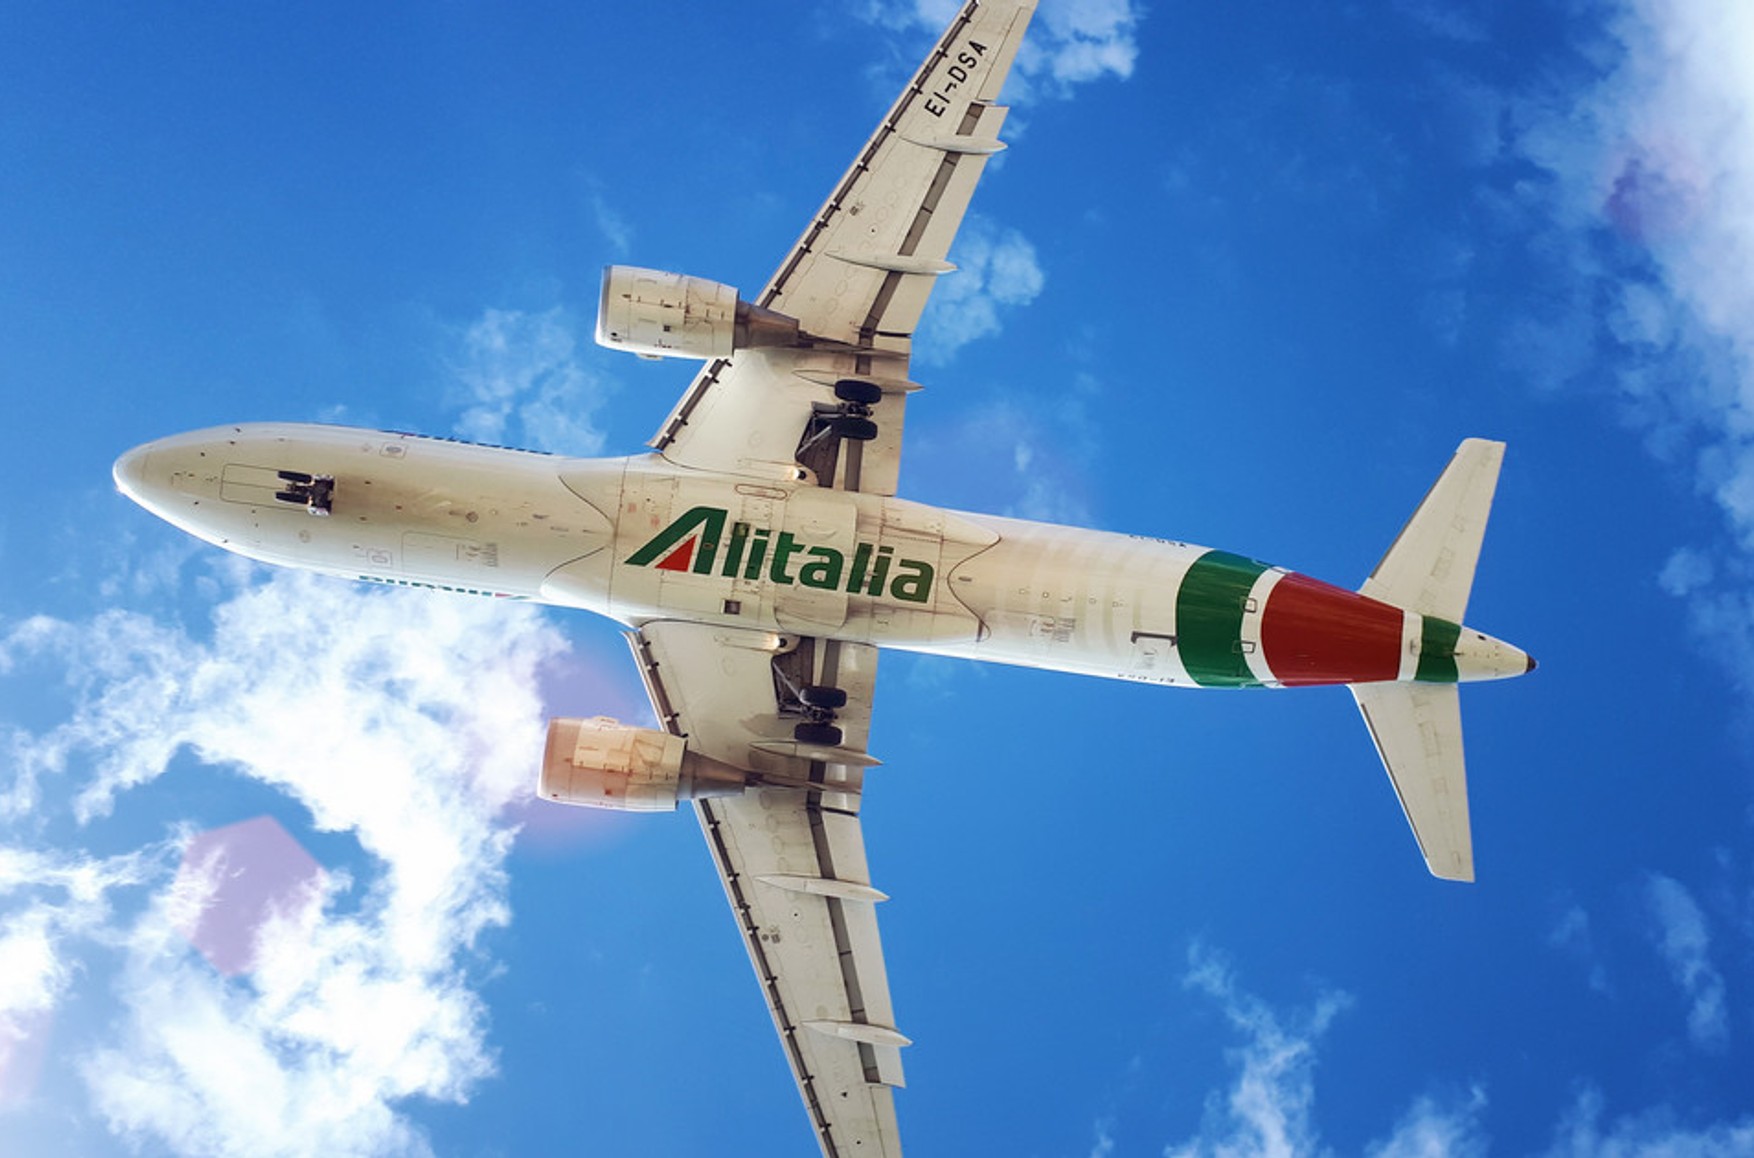 Найбільша італійська авіакомпанія Alitalia, заснована в 1946 році, закривається через банкрутство